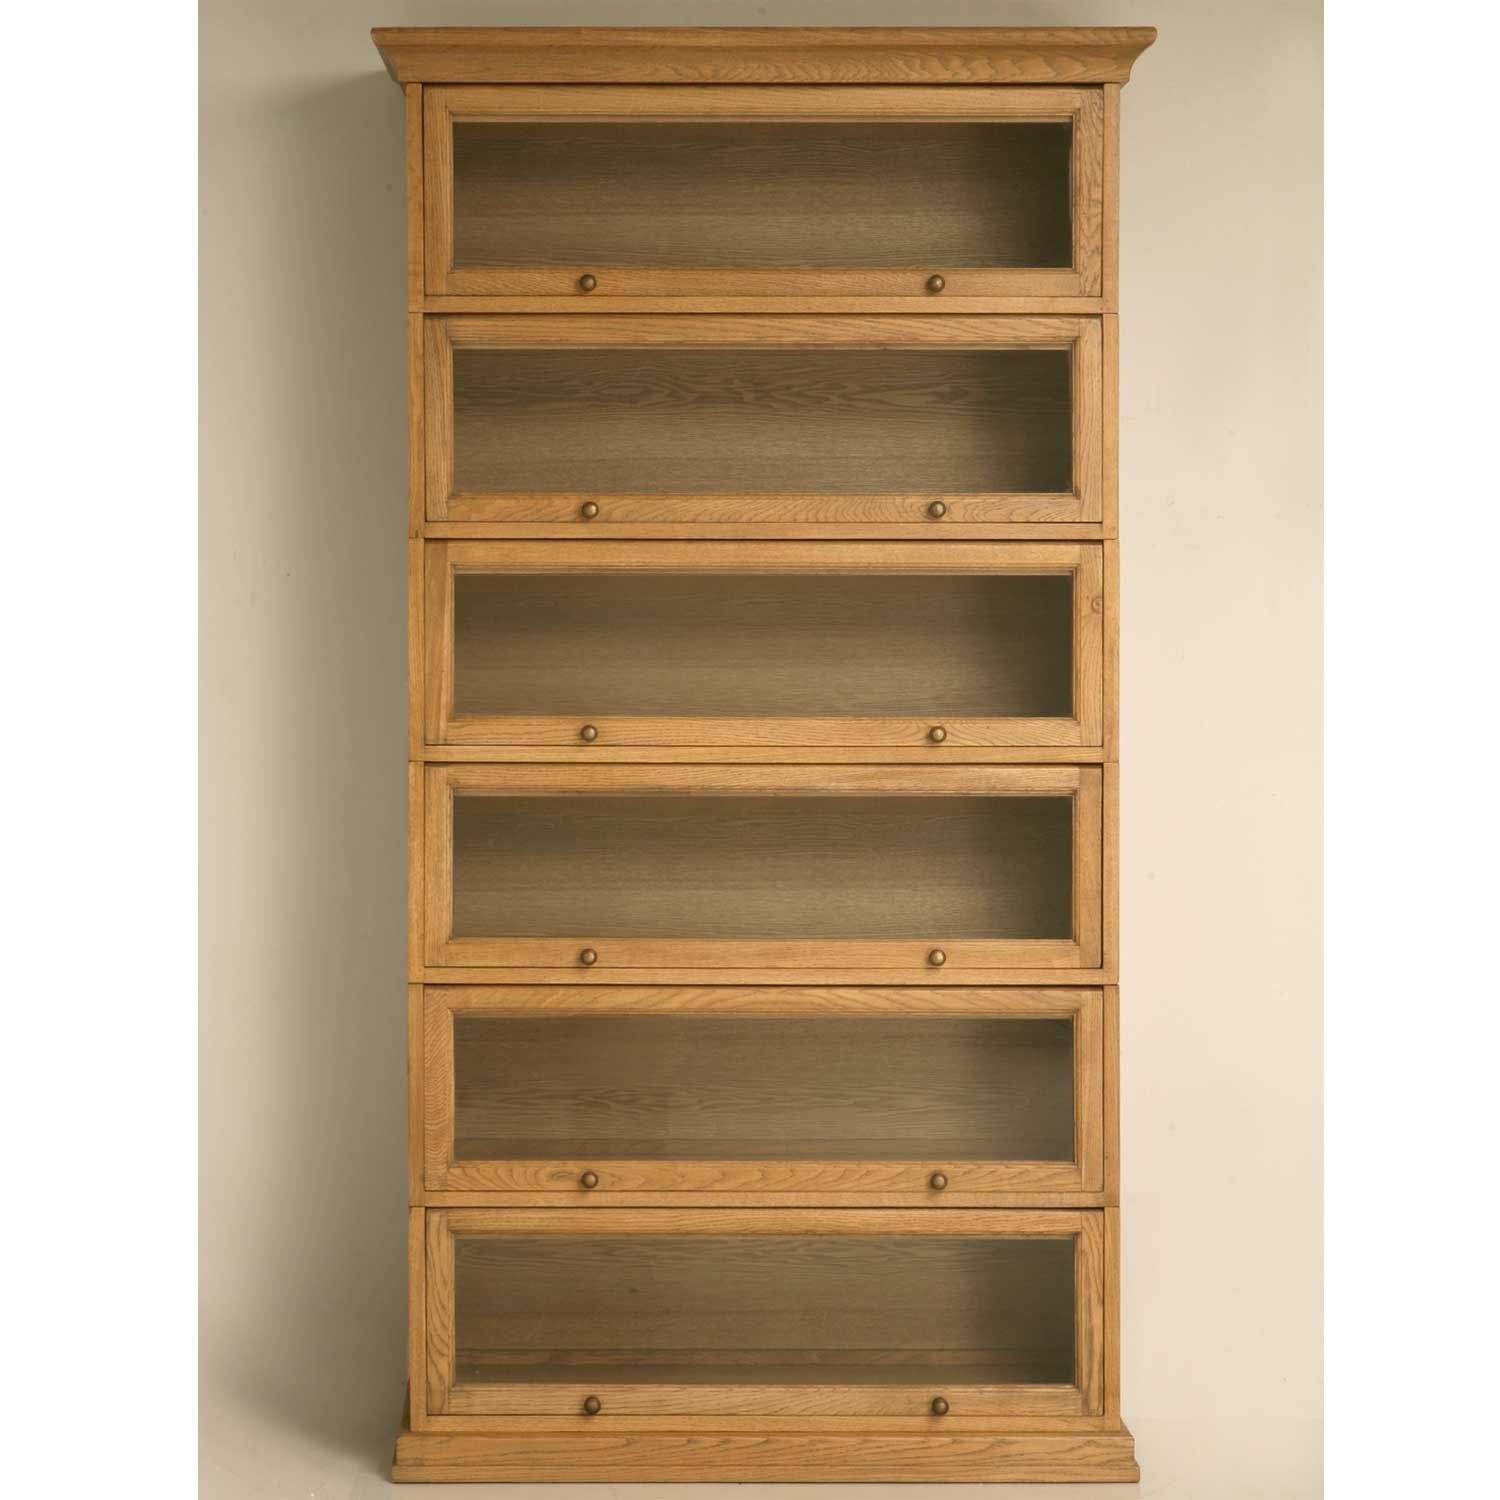 Wooden Bookshelves Bookshelves Made From Hardwoods Are Typically Regarding Wooden Bookshelves (View 7 of 14)